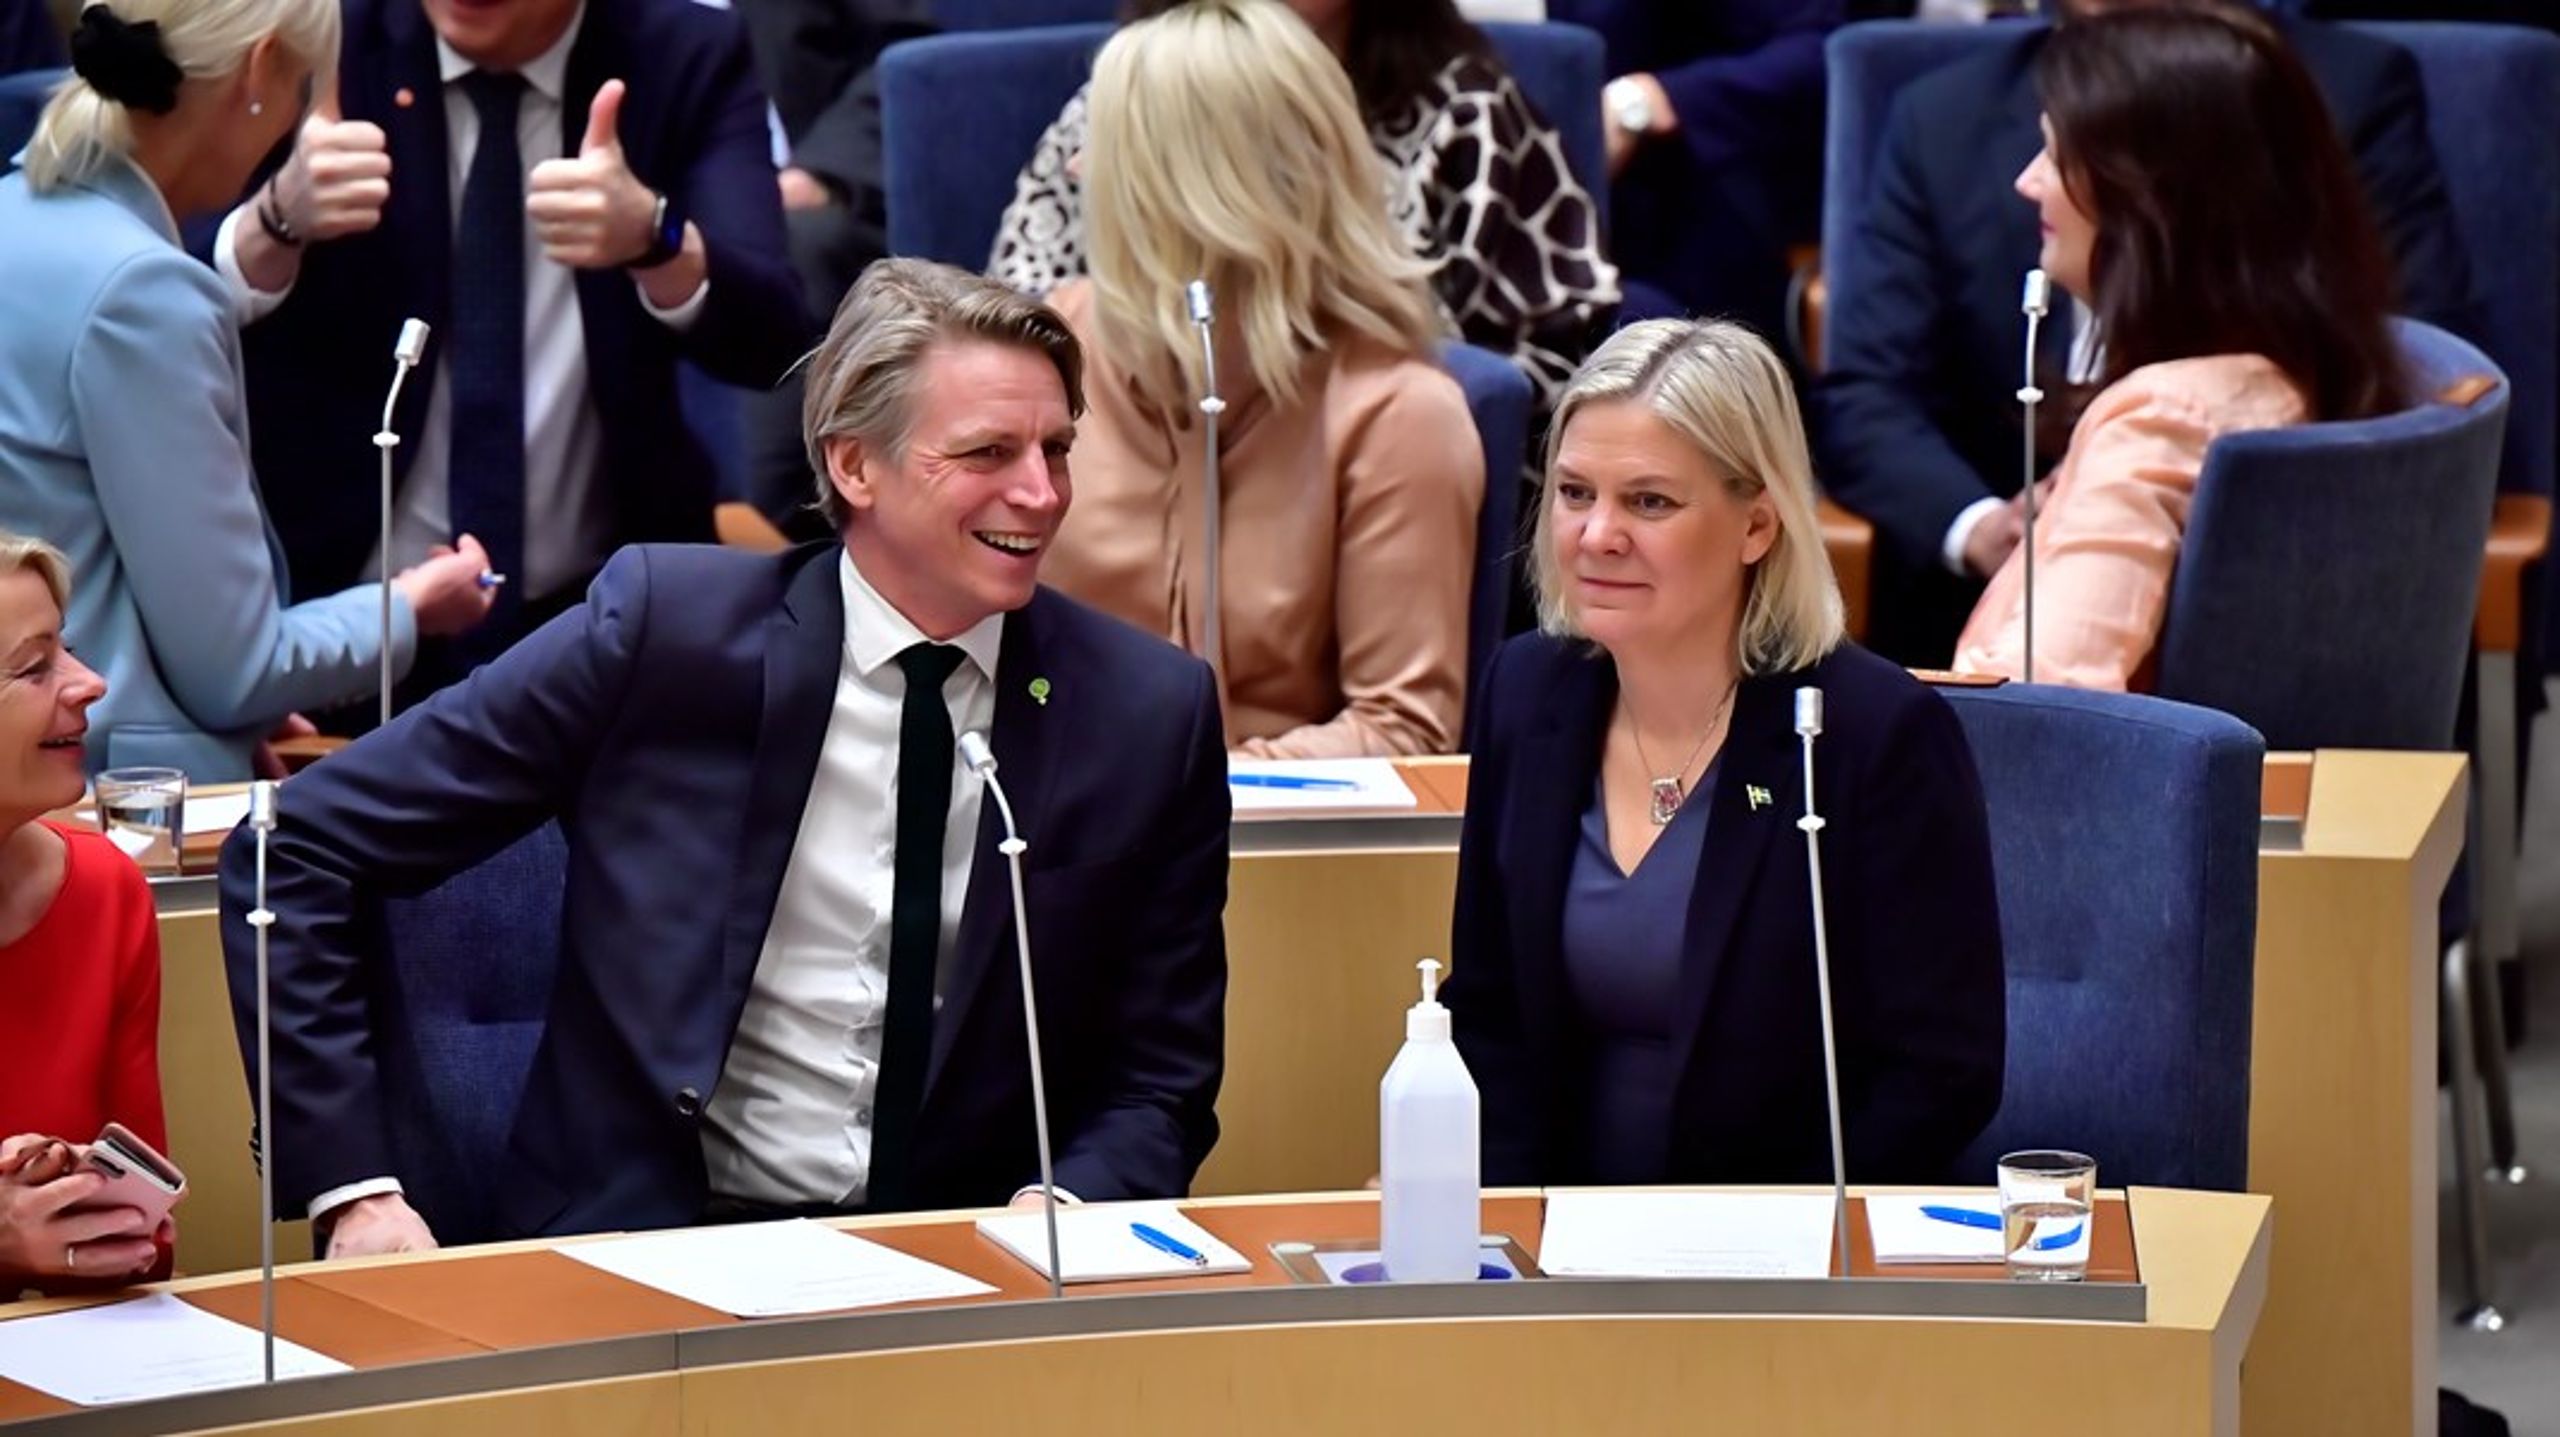 Sista dagen som regeringskollegor. Frågan är om Magdalena Andersson kommer kunna räkna med MP:s röster när partiet nu ska gå i opposition?